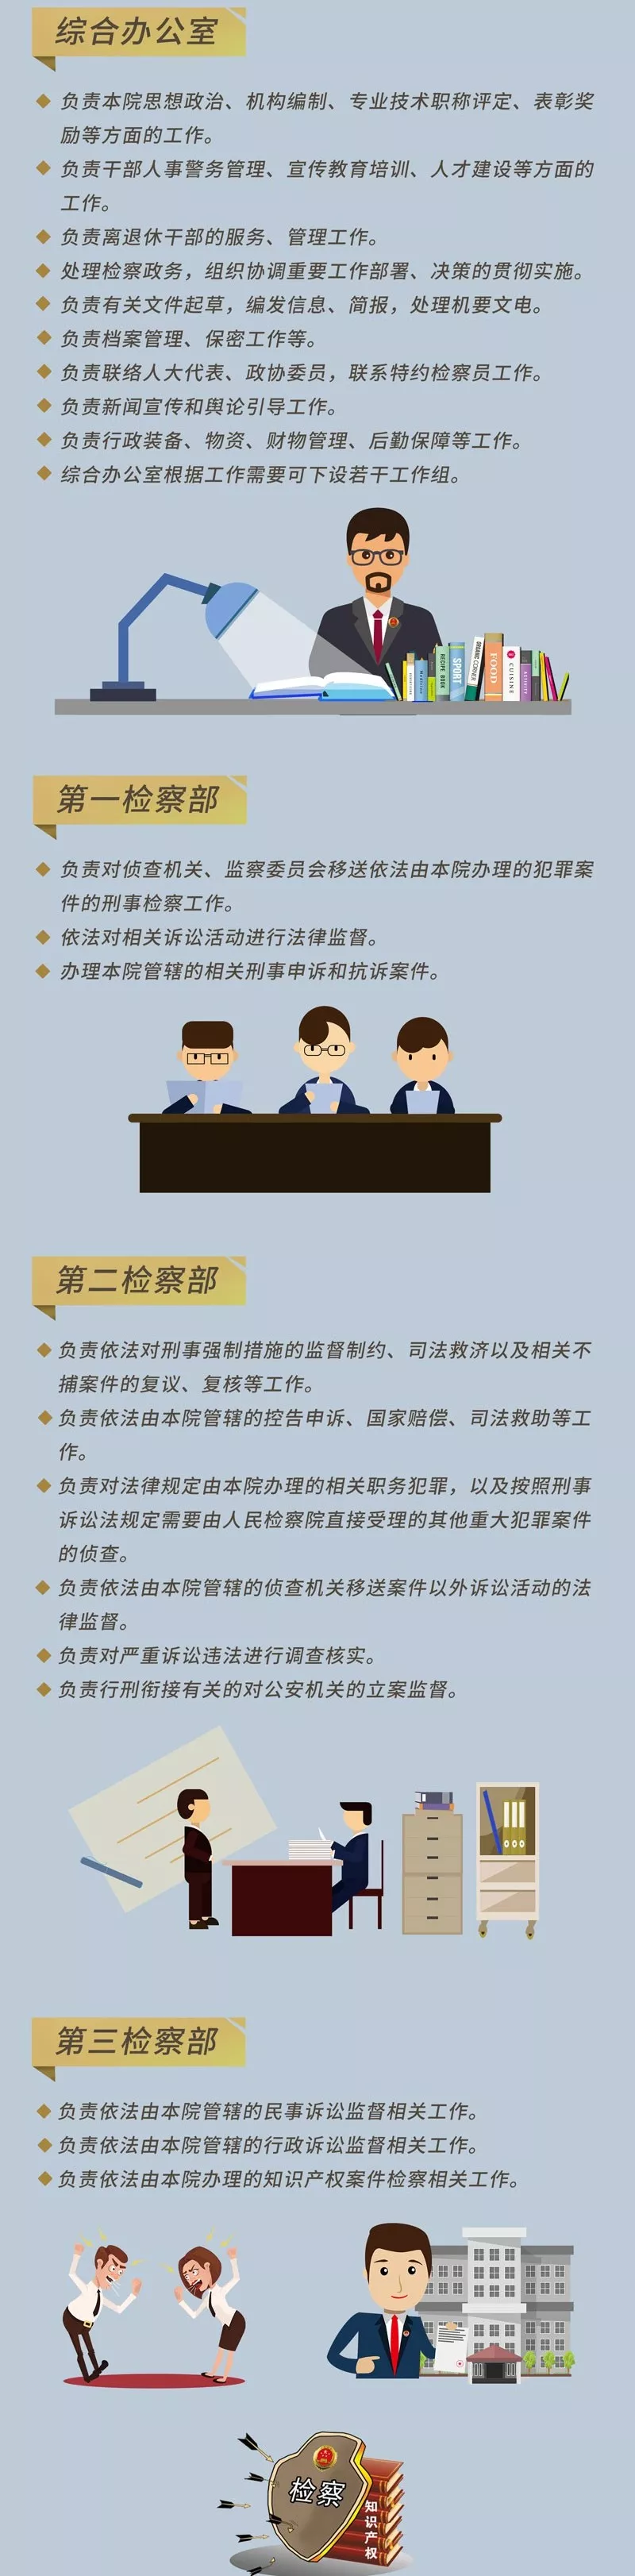 一图读懂 | 北京市人民检察院各分院内设机构设置